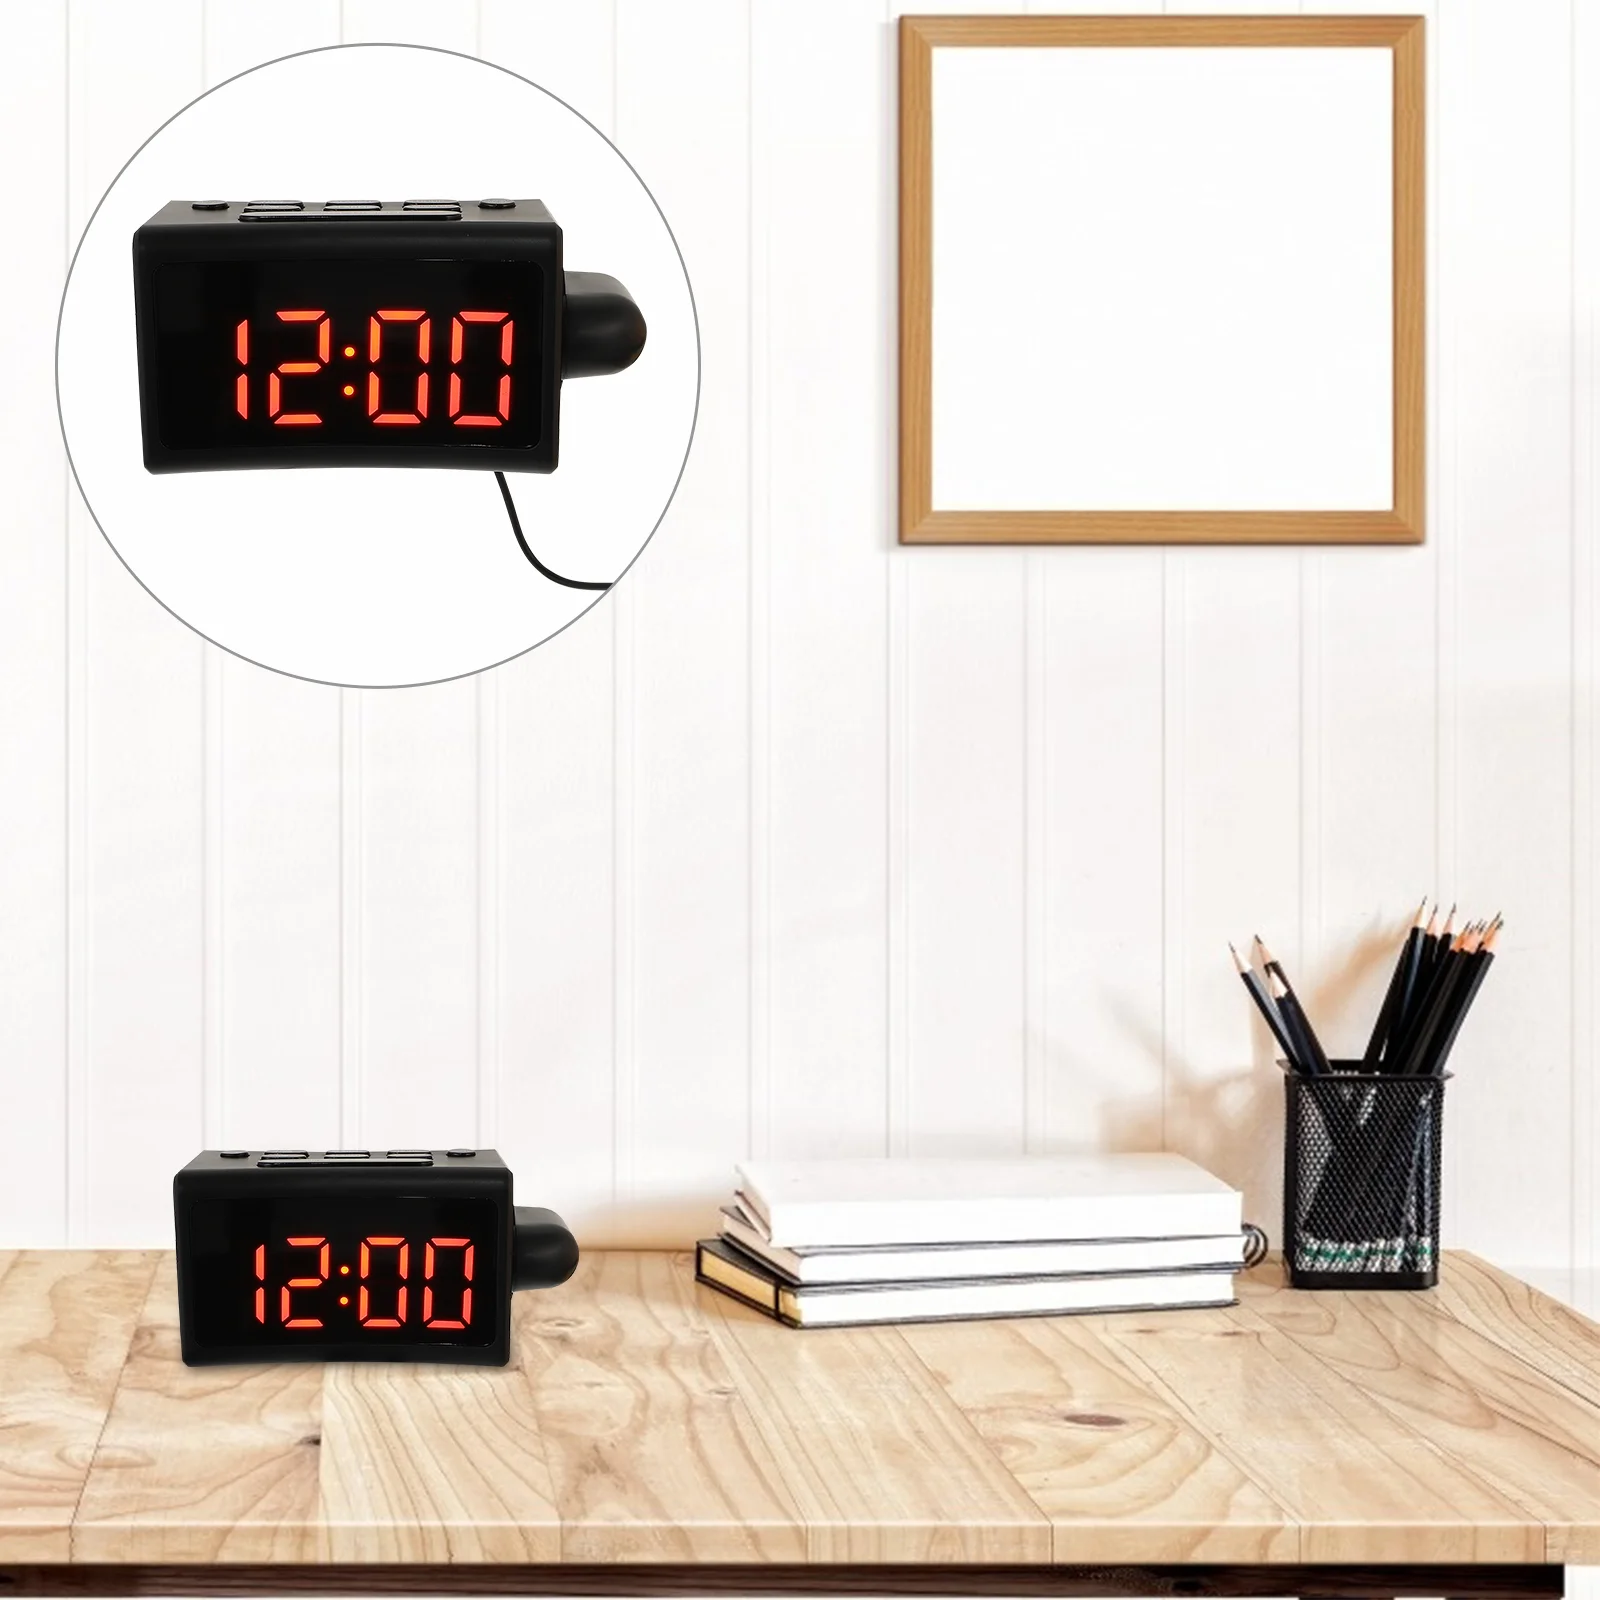 

1 комплект проекционный электронный будильник для помещений будильник проекционные часы